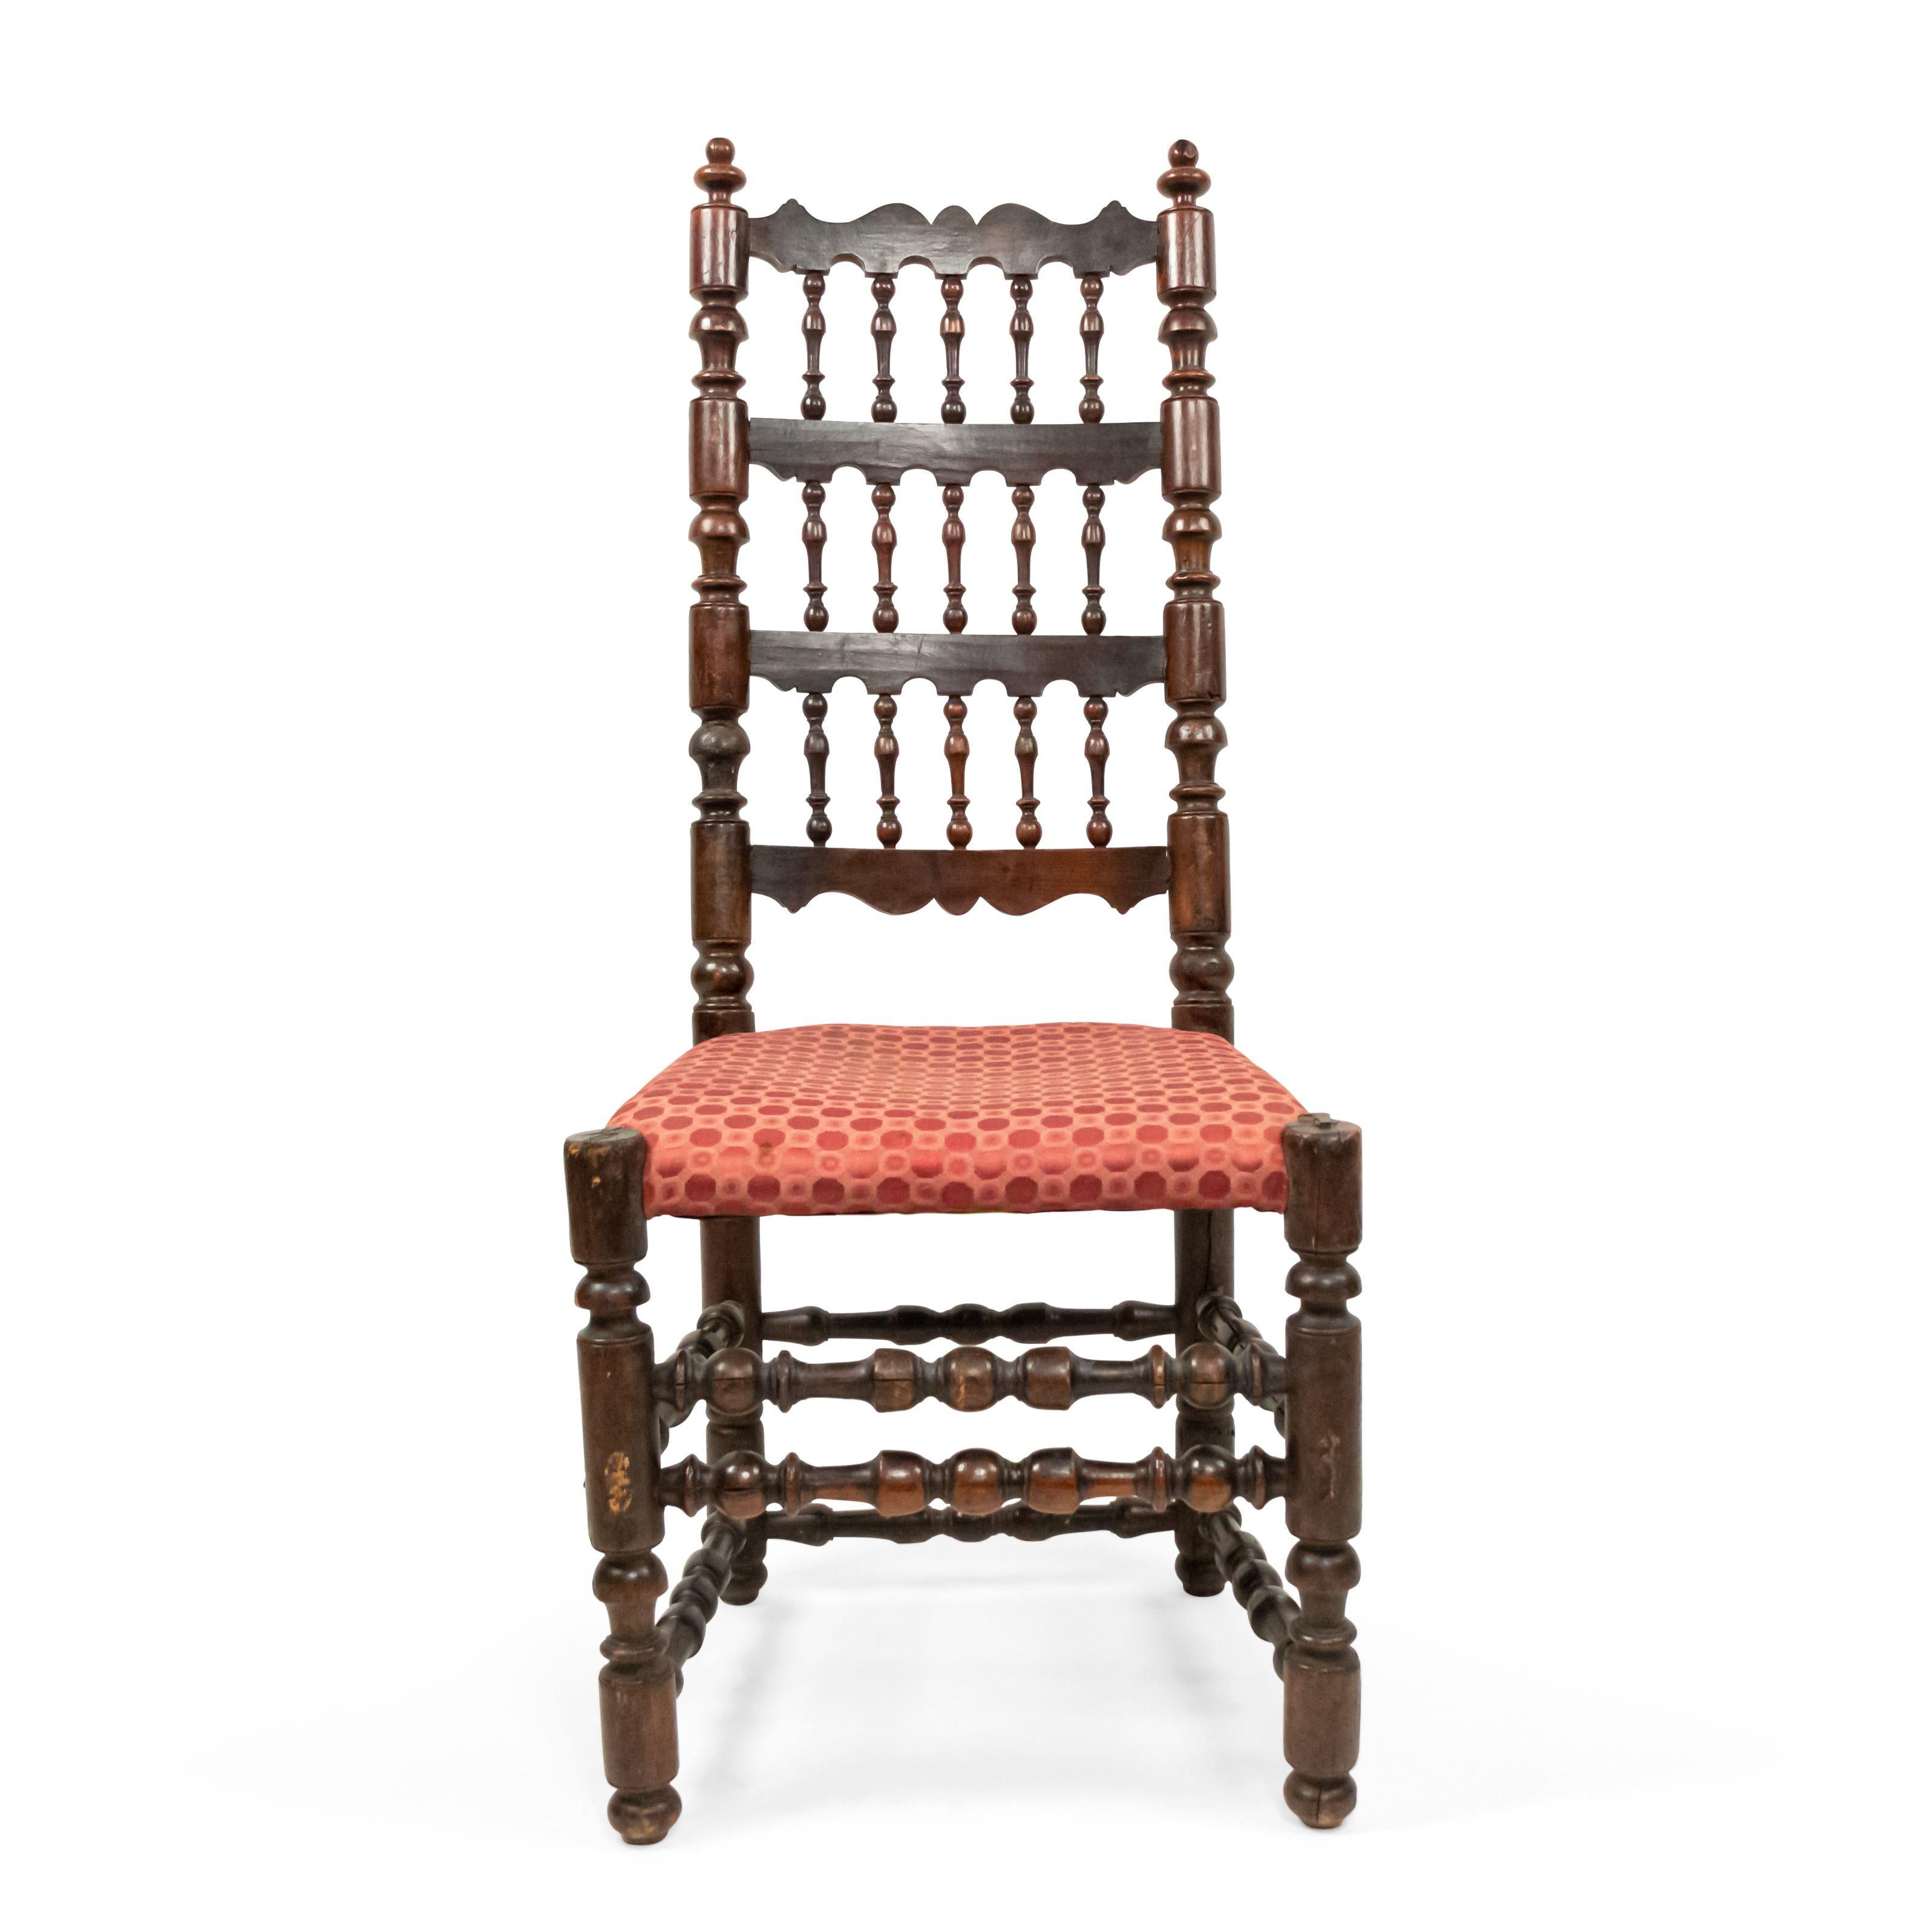 3 chaises de style Renaissance anglaise (17ème siècle) en noyer à 3 niveaux avec dossier en fuseau et assise tapissée. (prix unitaire).
  